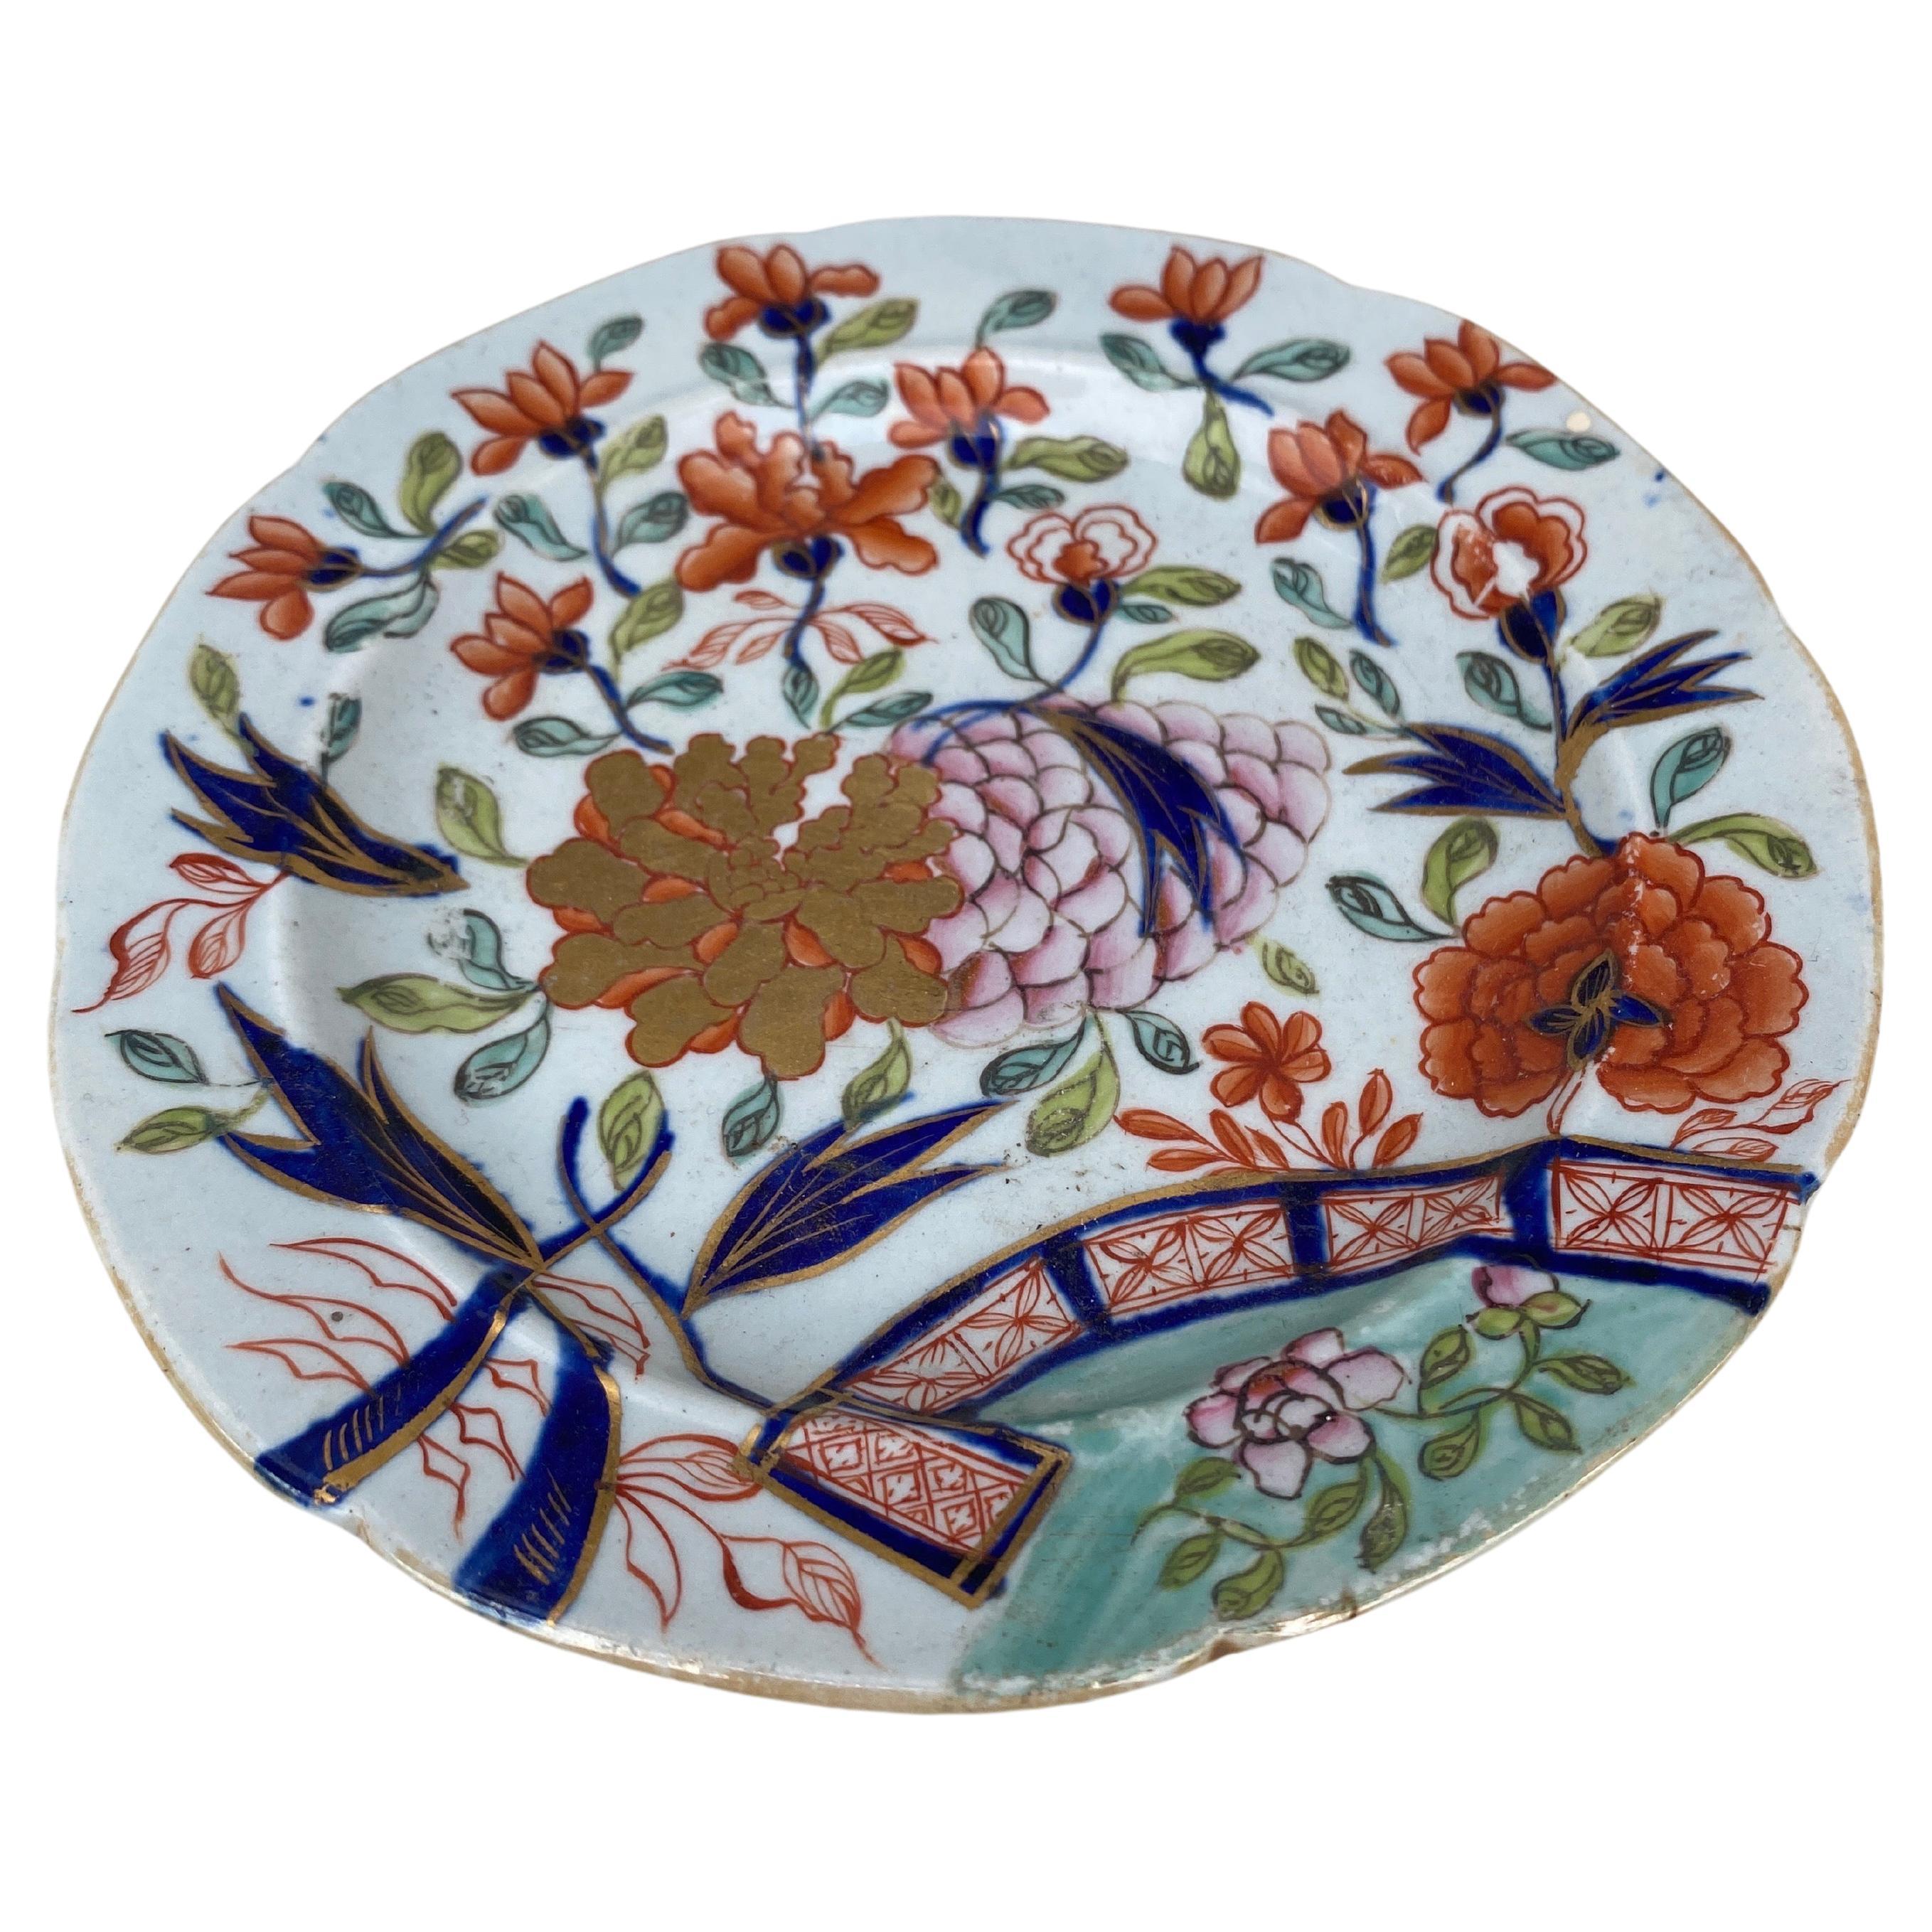 Pequeño plato inglés de piedra de hierro de hacia 1890.
Chinoiserie o estilo Imari.
15 cm de diámetro.